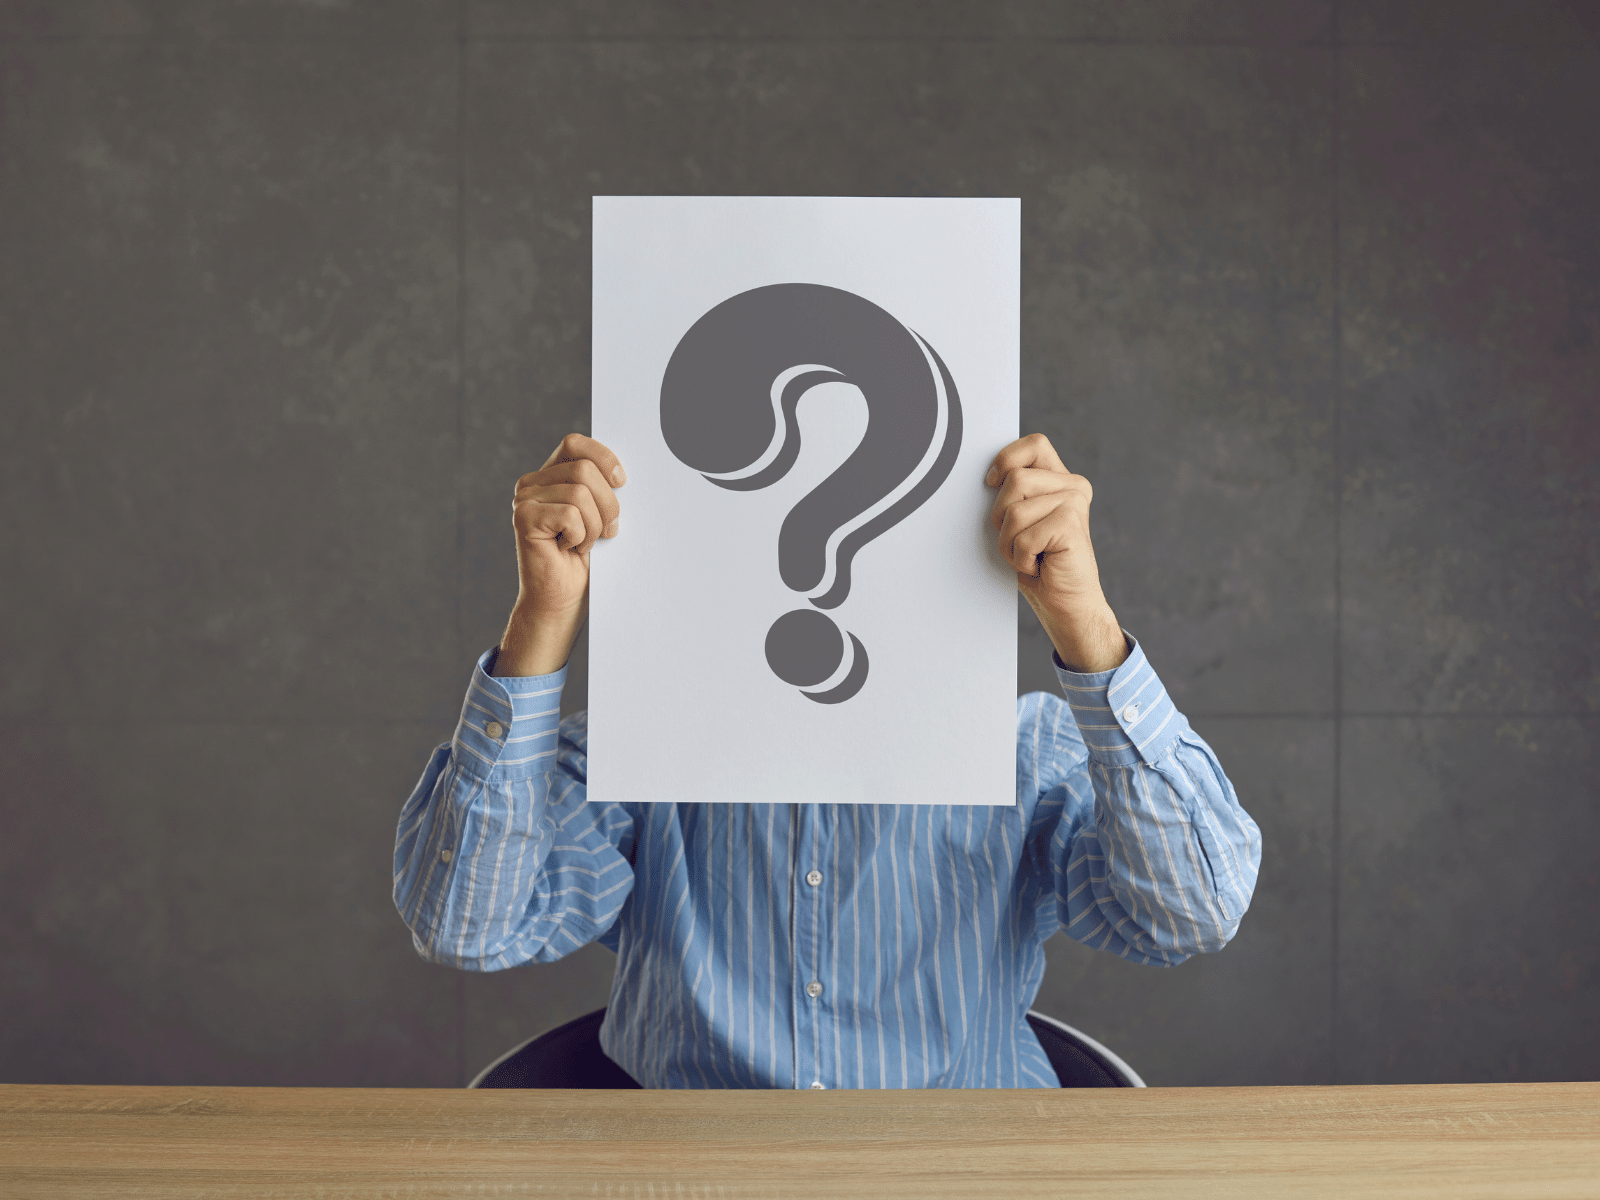 Retirement Planning’s “Hidden” Questions